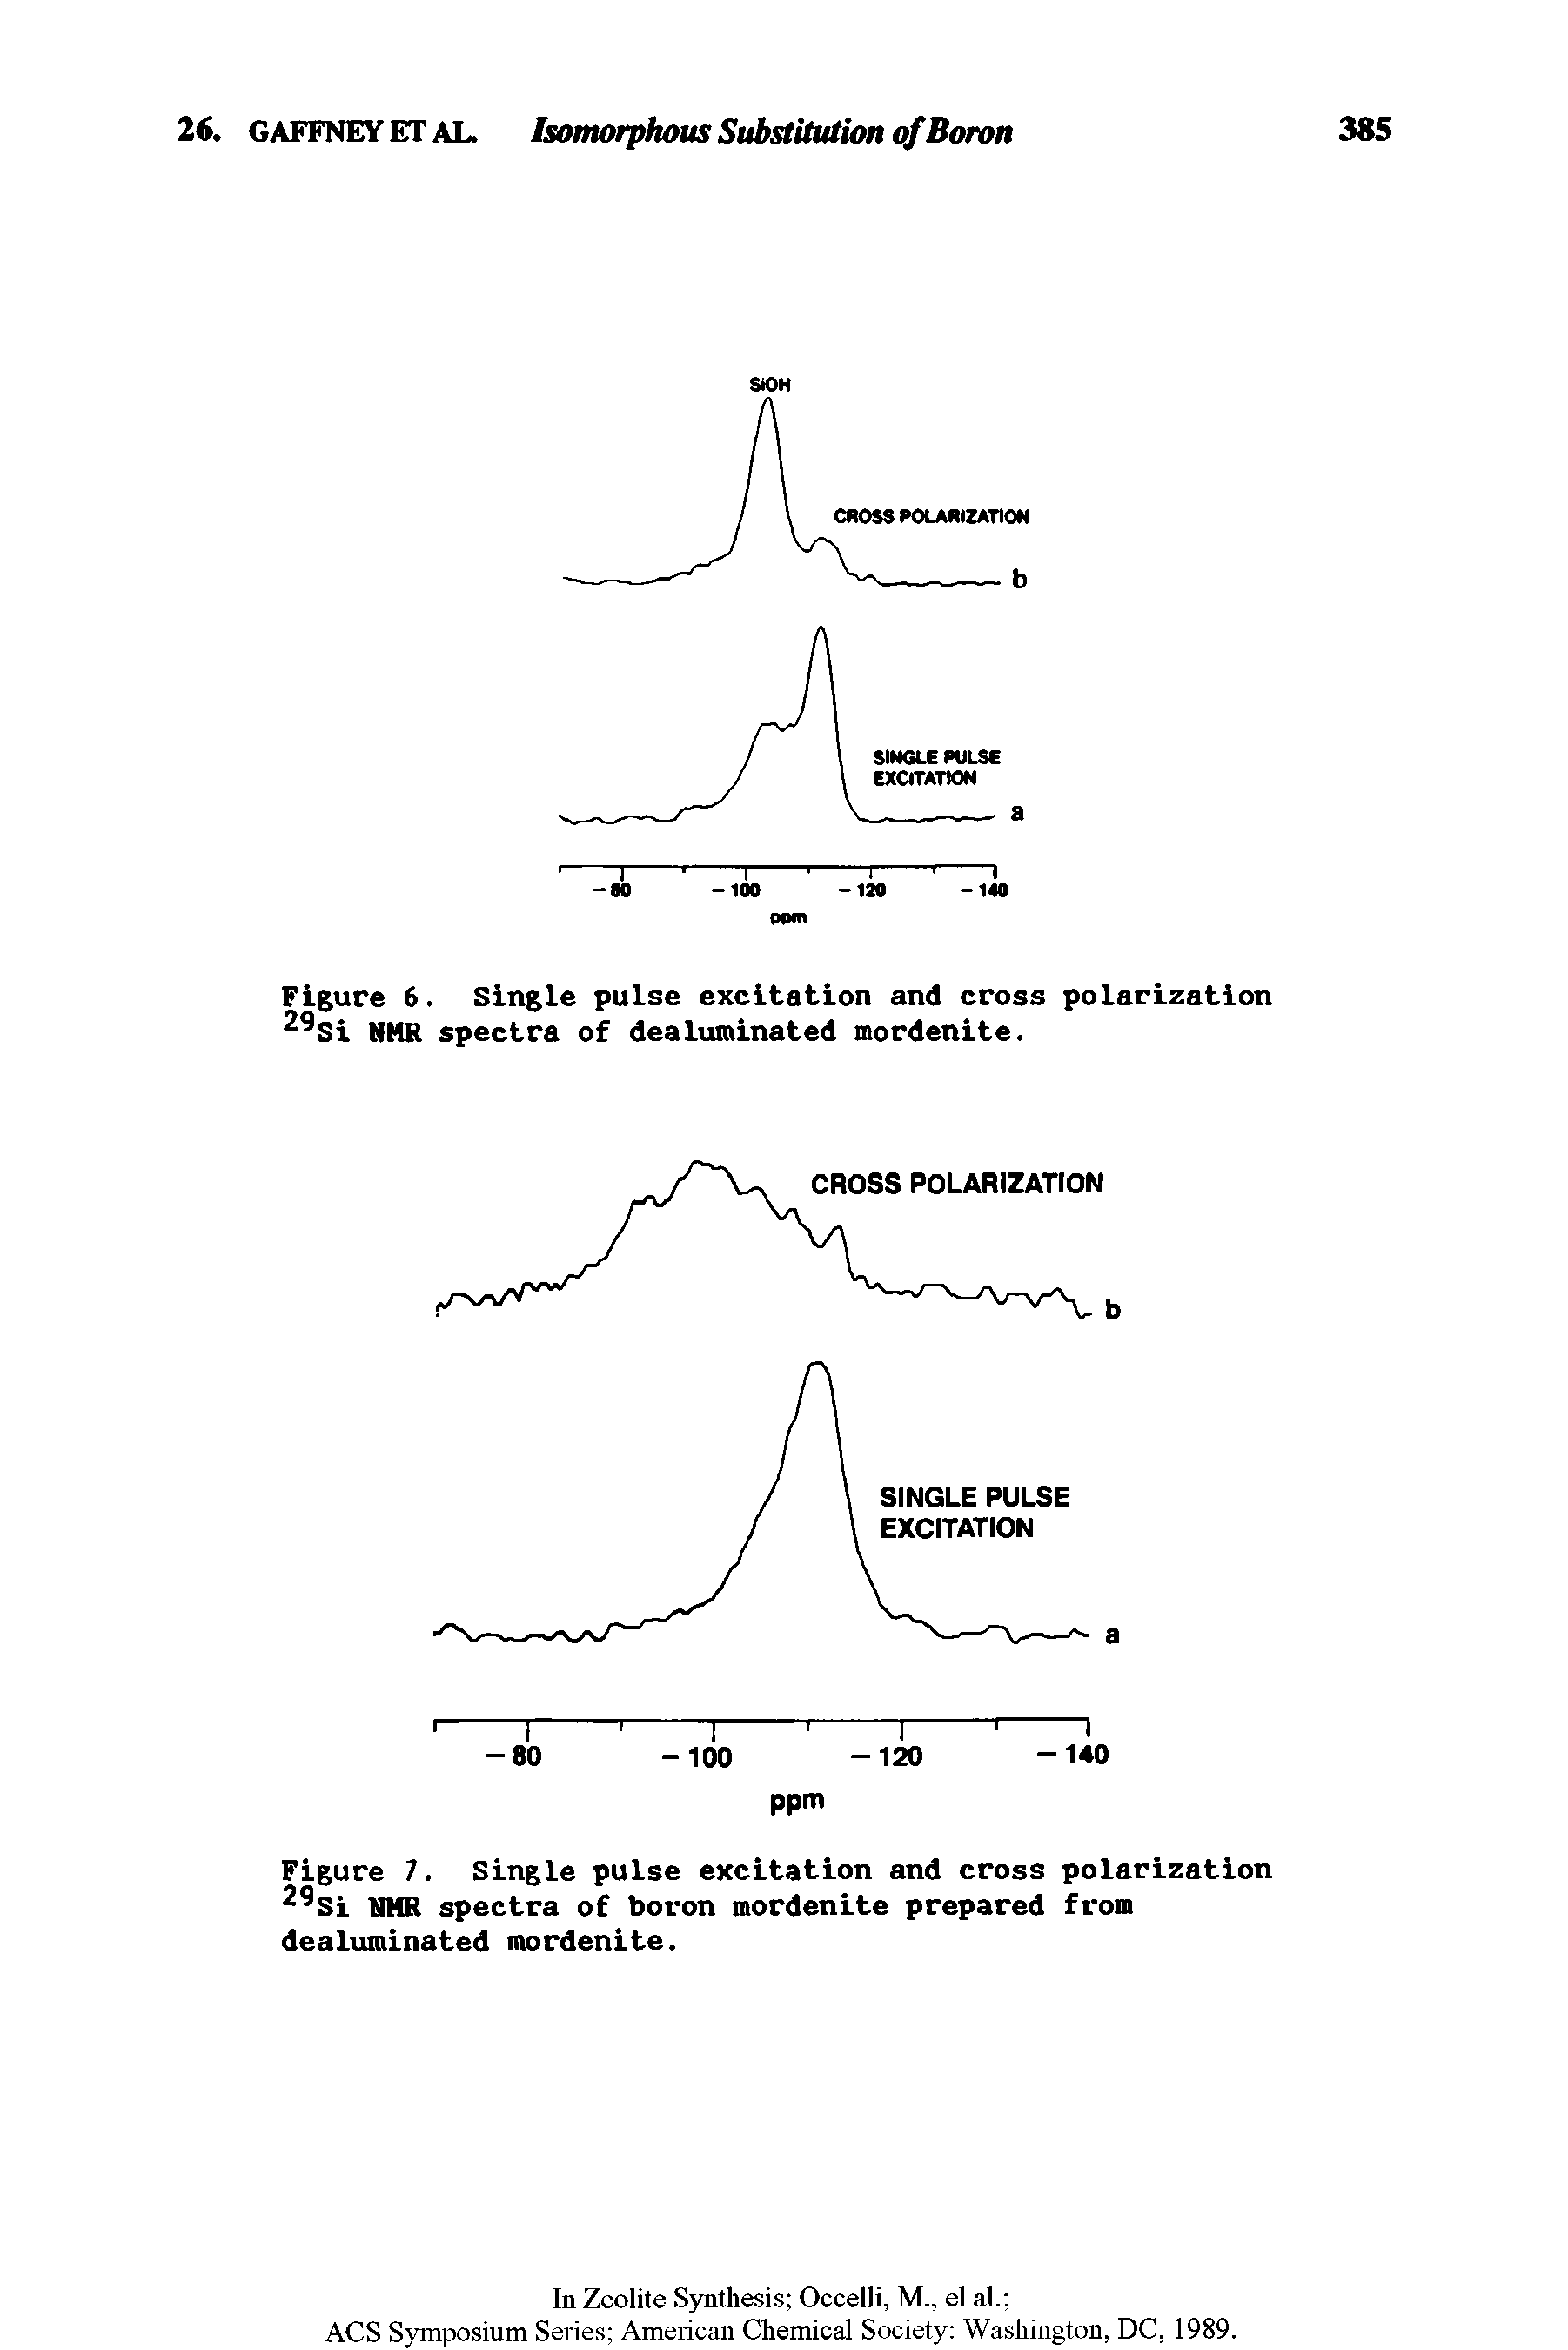 Figure 7. Single pulse excitation and cross polarization 2 Si NMR spectra of boron mordenite prepared from dealuminated mordenite.